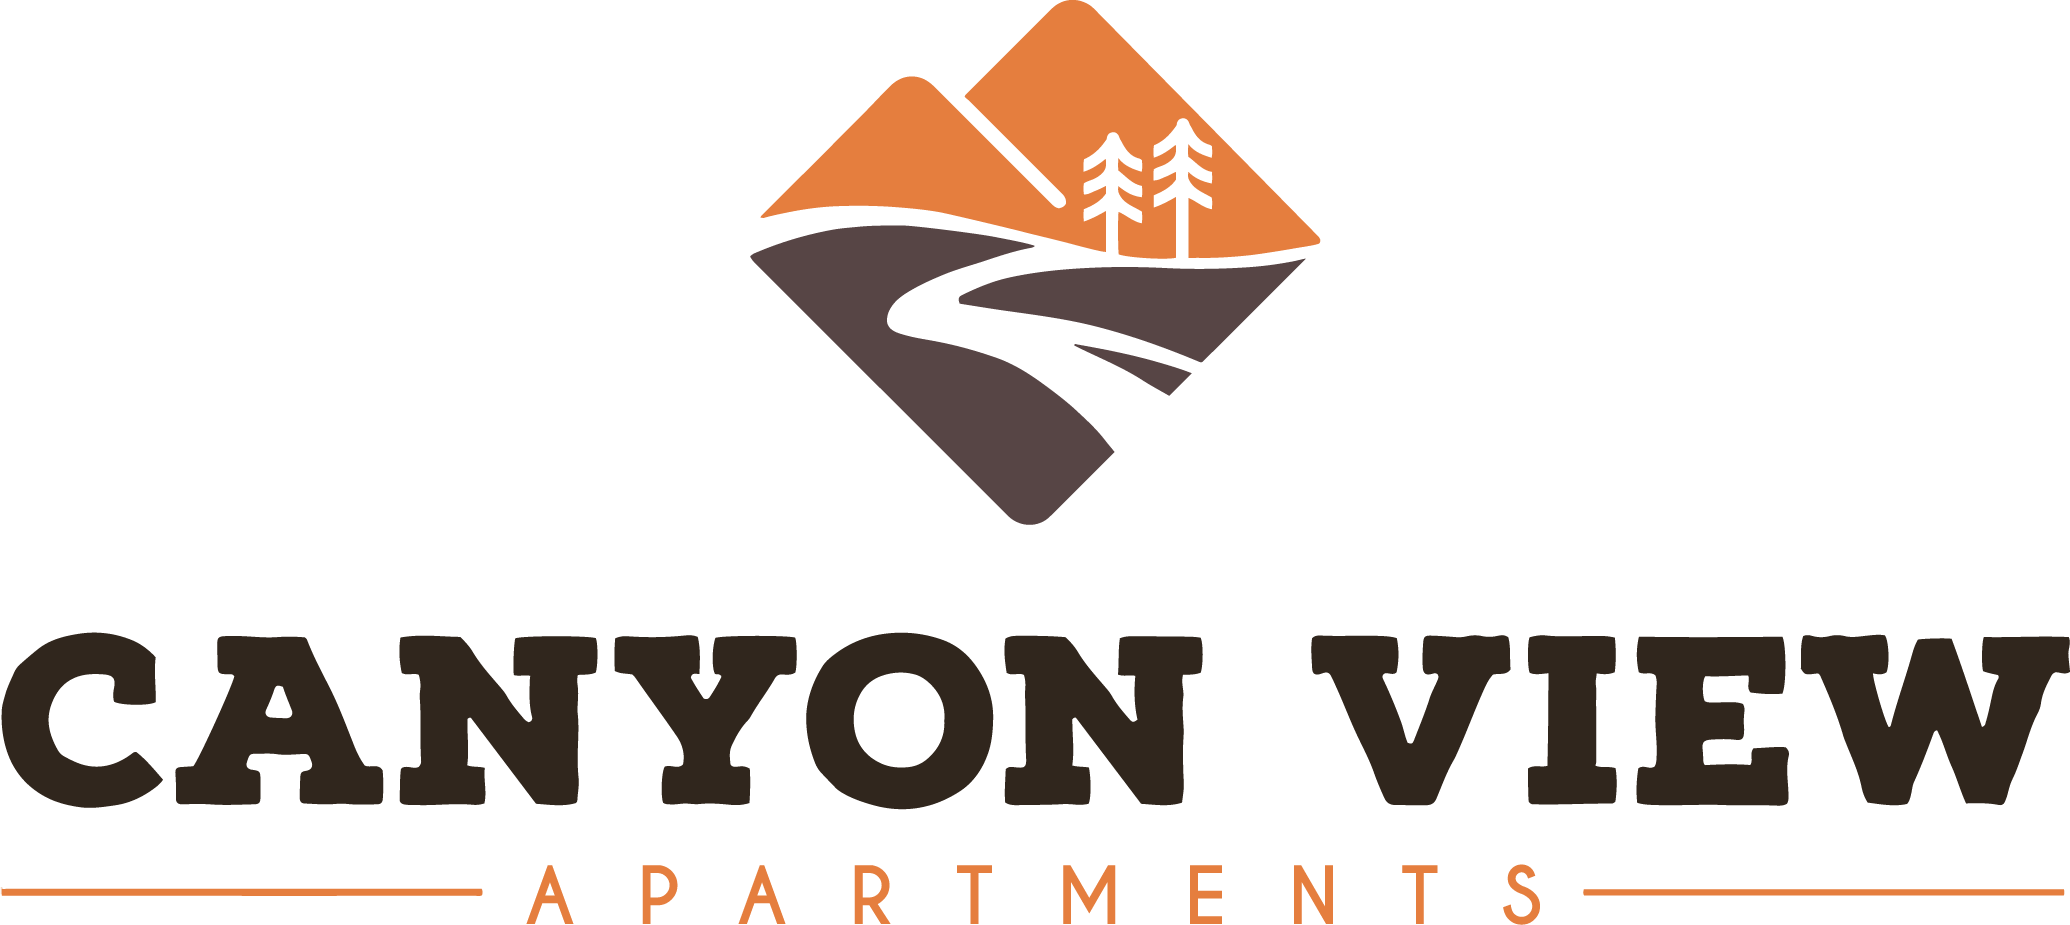 Canyon View logo